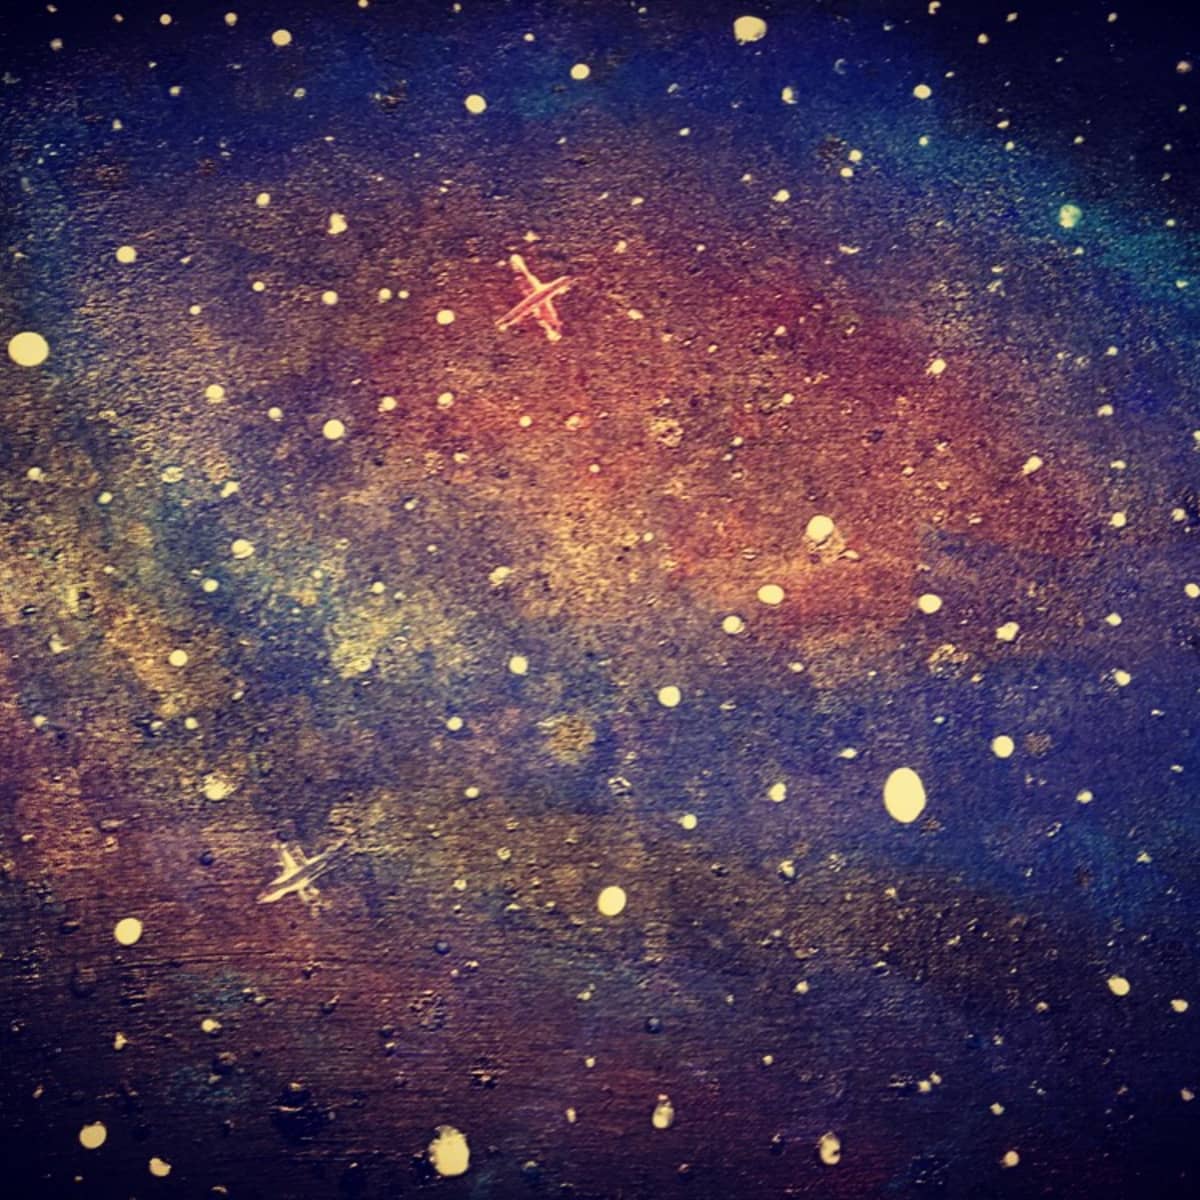 Hãy thư giãn với một buổi vẽ thiên hà để trải nghiệm không gian vô tận. Cùng khám phá và tái tạo những vùng trời đầy sao bằng những nét vẽ chân thật và tinh tế nhất.